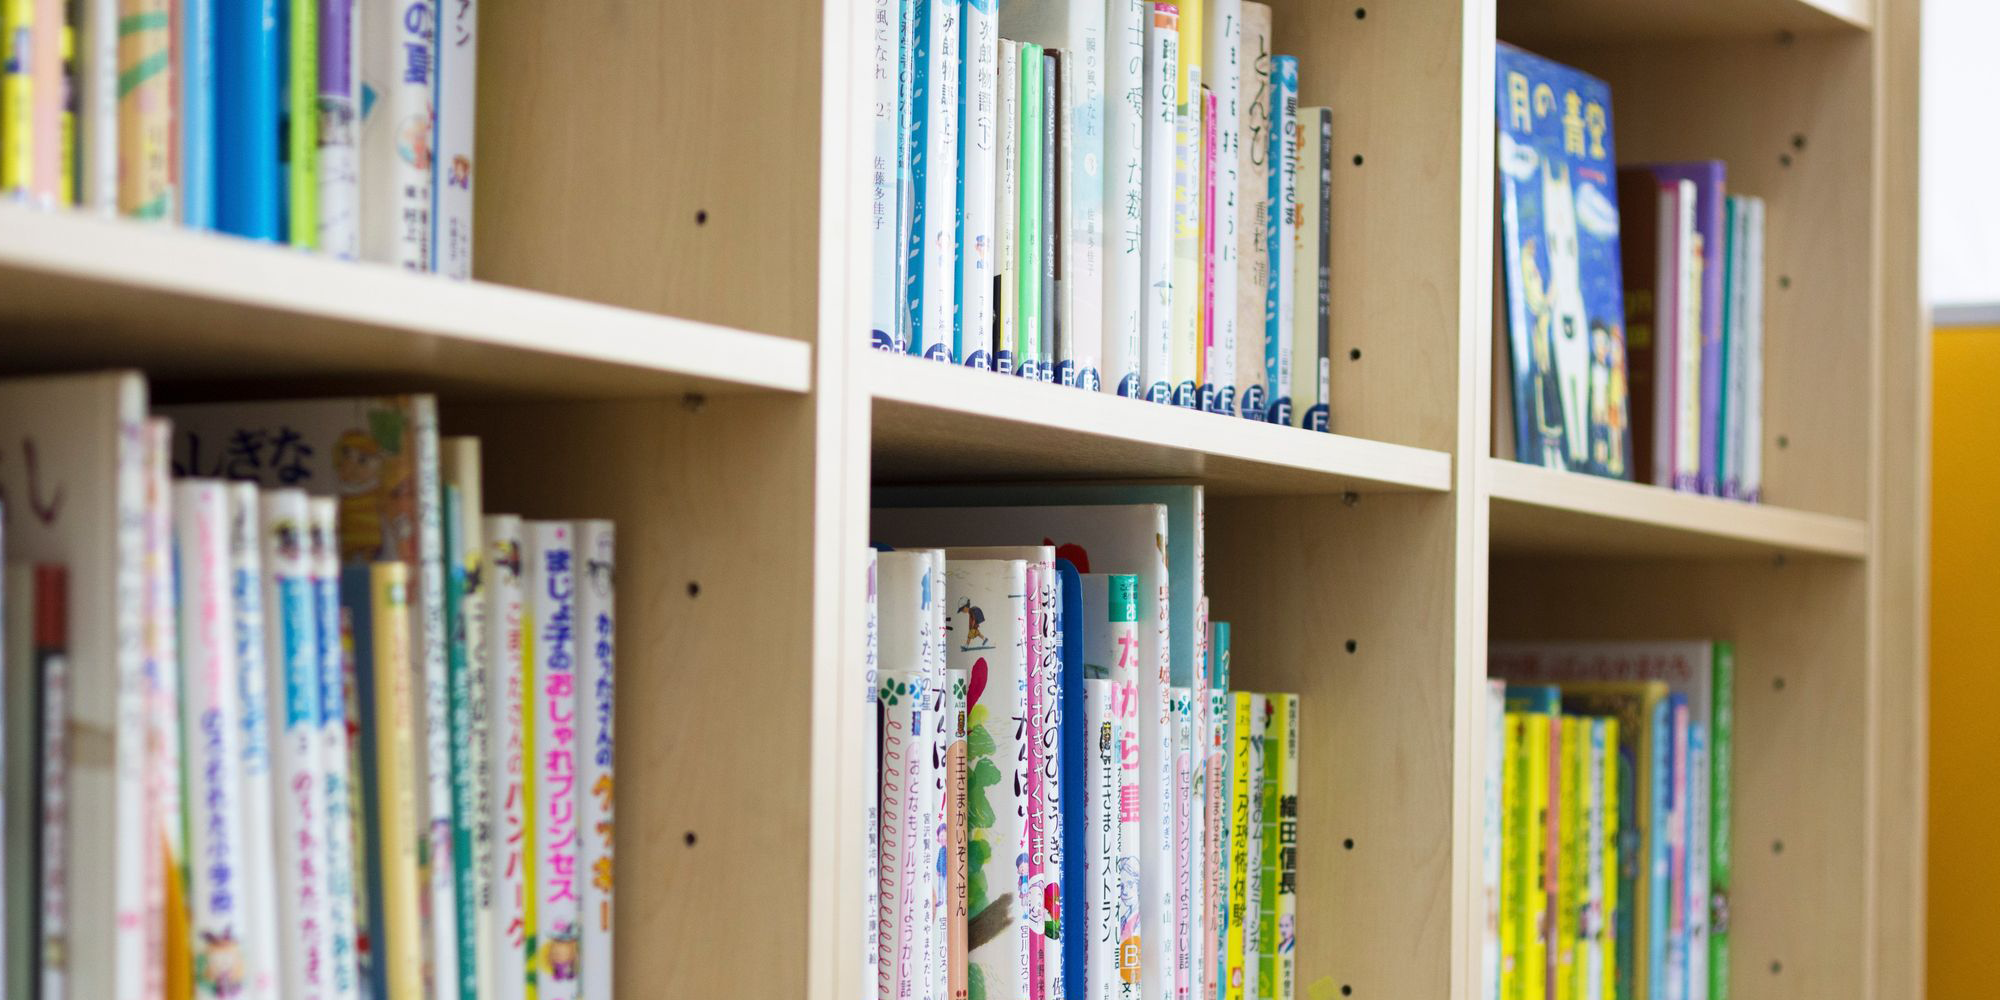 日本人学校、インタースクールに通われている 子ども向けクアラルンプールの日本語の塾